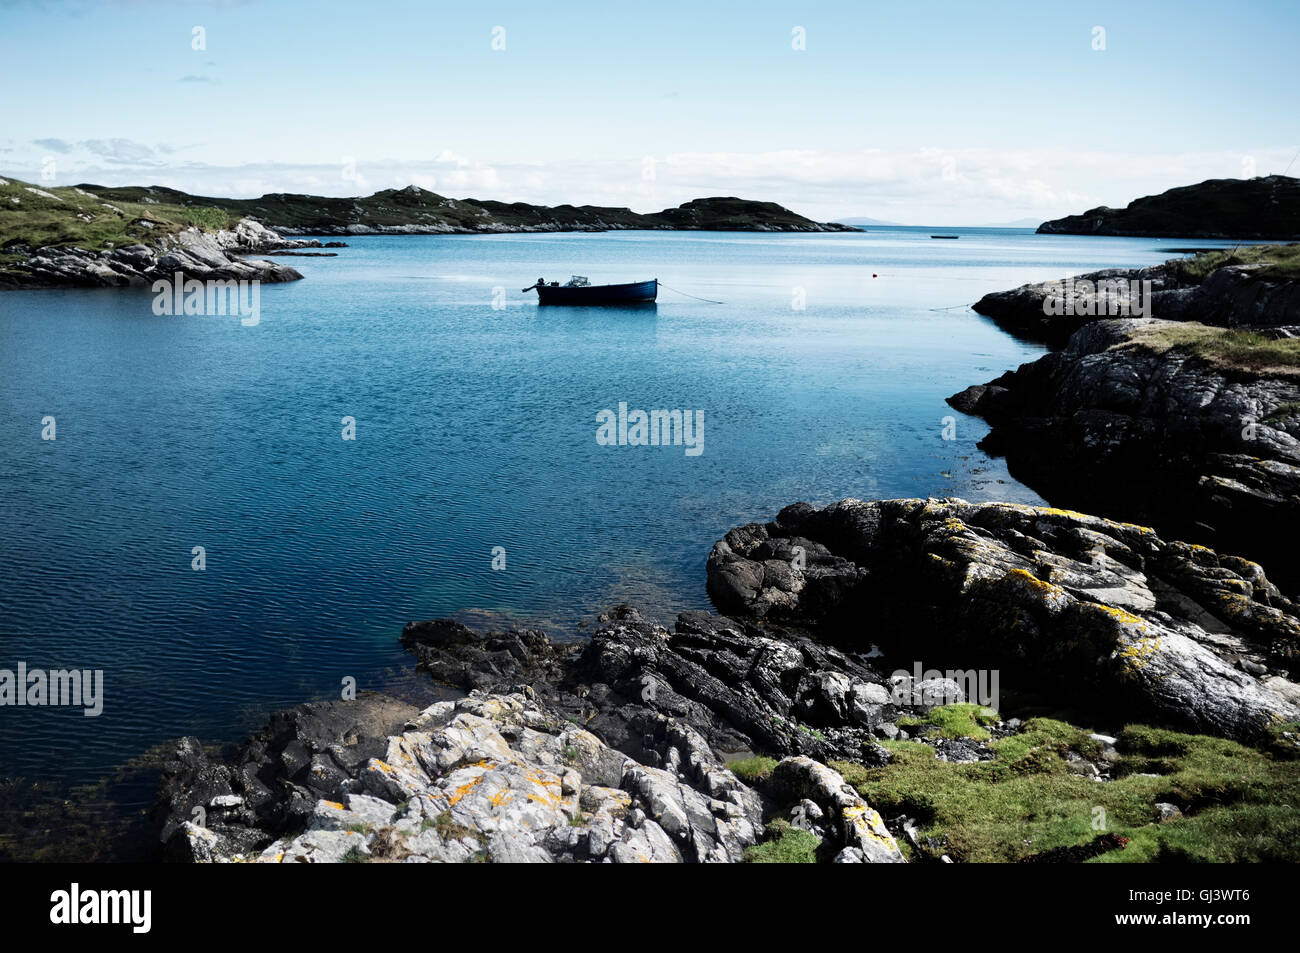 La baie idyllique avec un bateau dans l'île de Harris, Scotland Banque D'Images